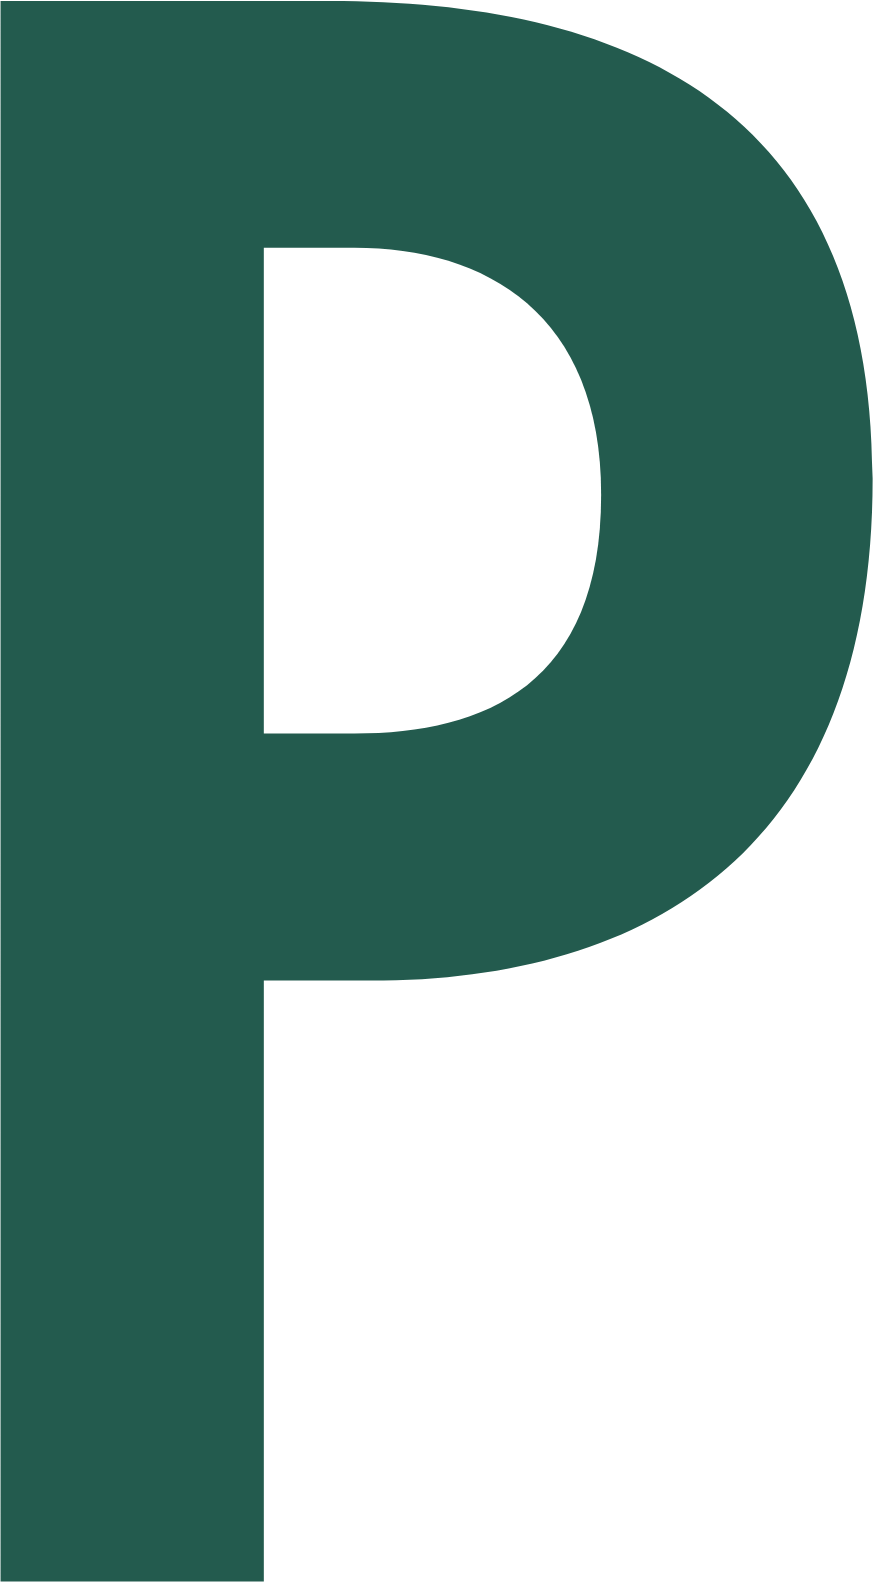 Preferred Bank logo (transparent PNG)